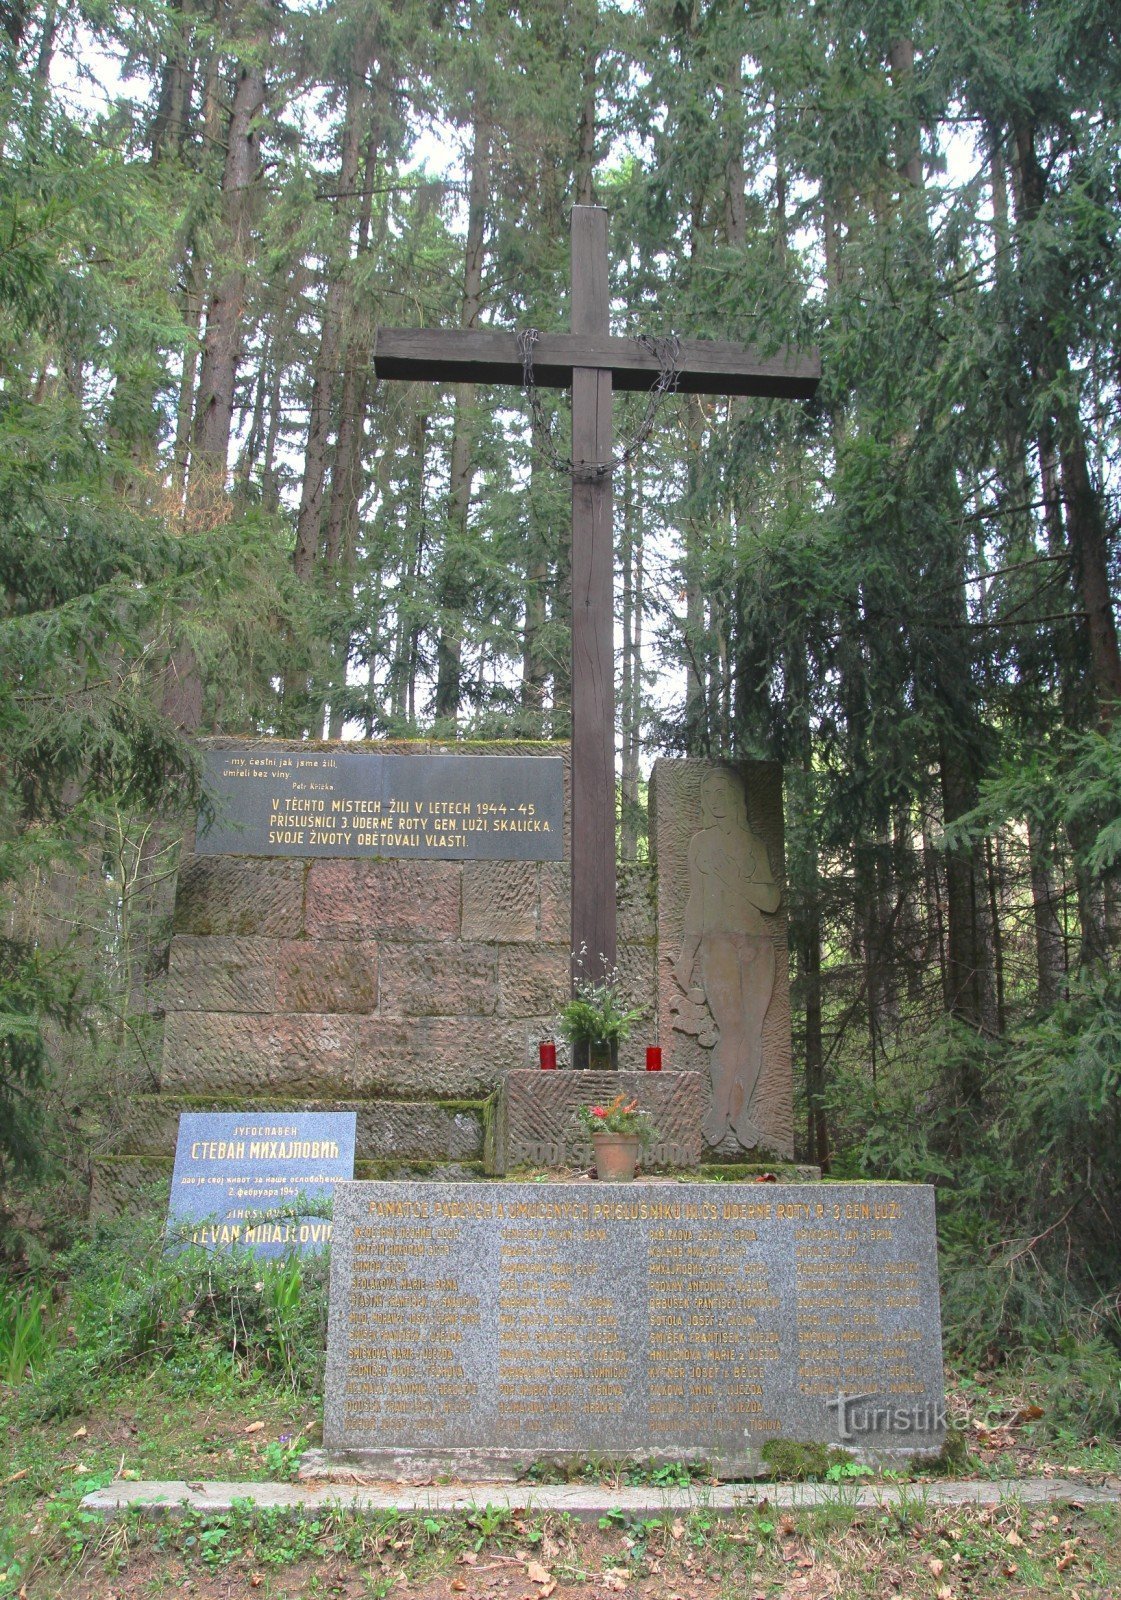 ルジ将軍の攻撃中隊のパルチザンの記念碑